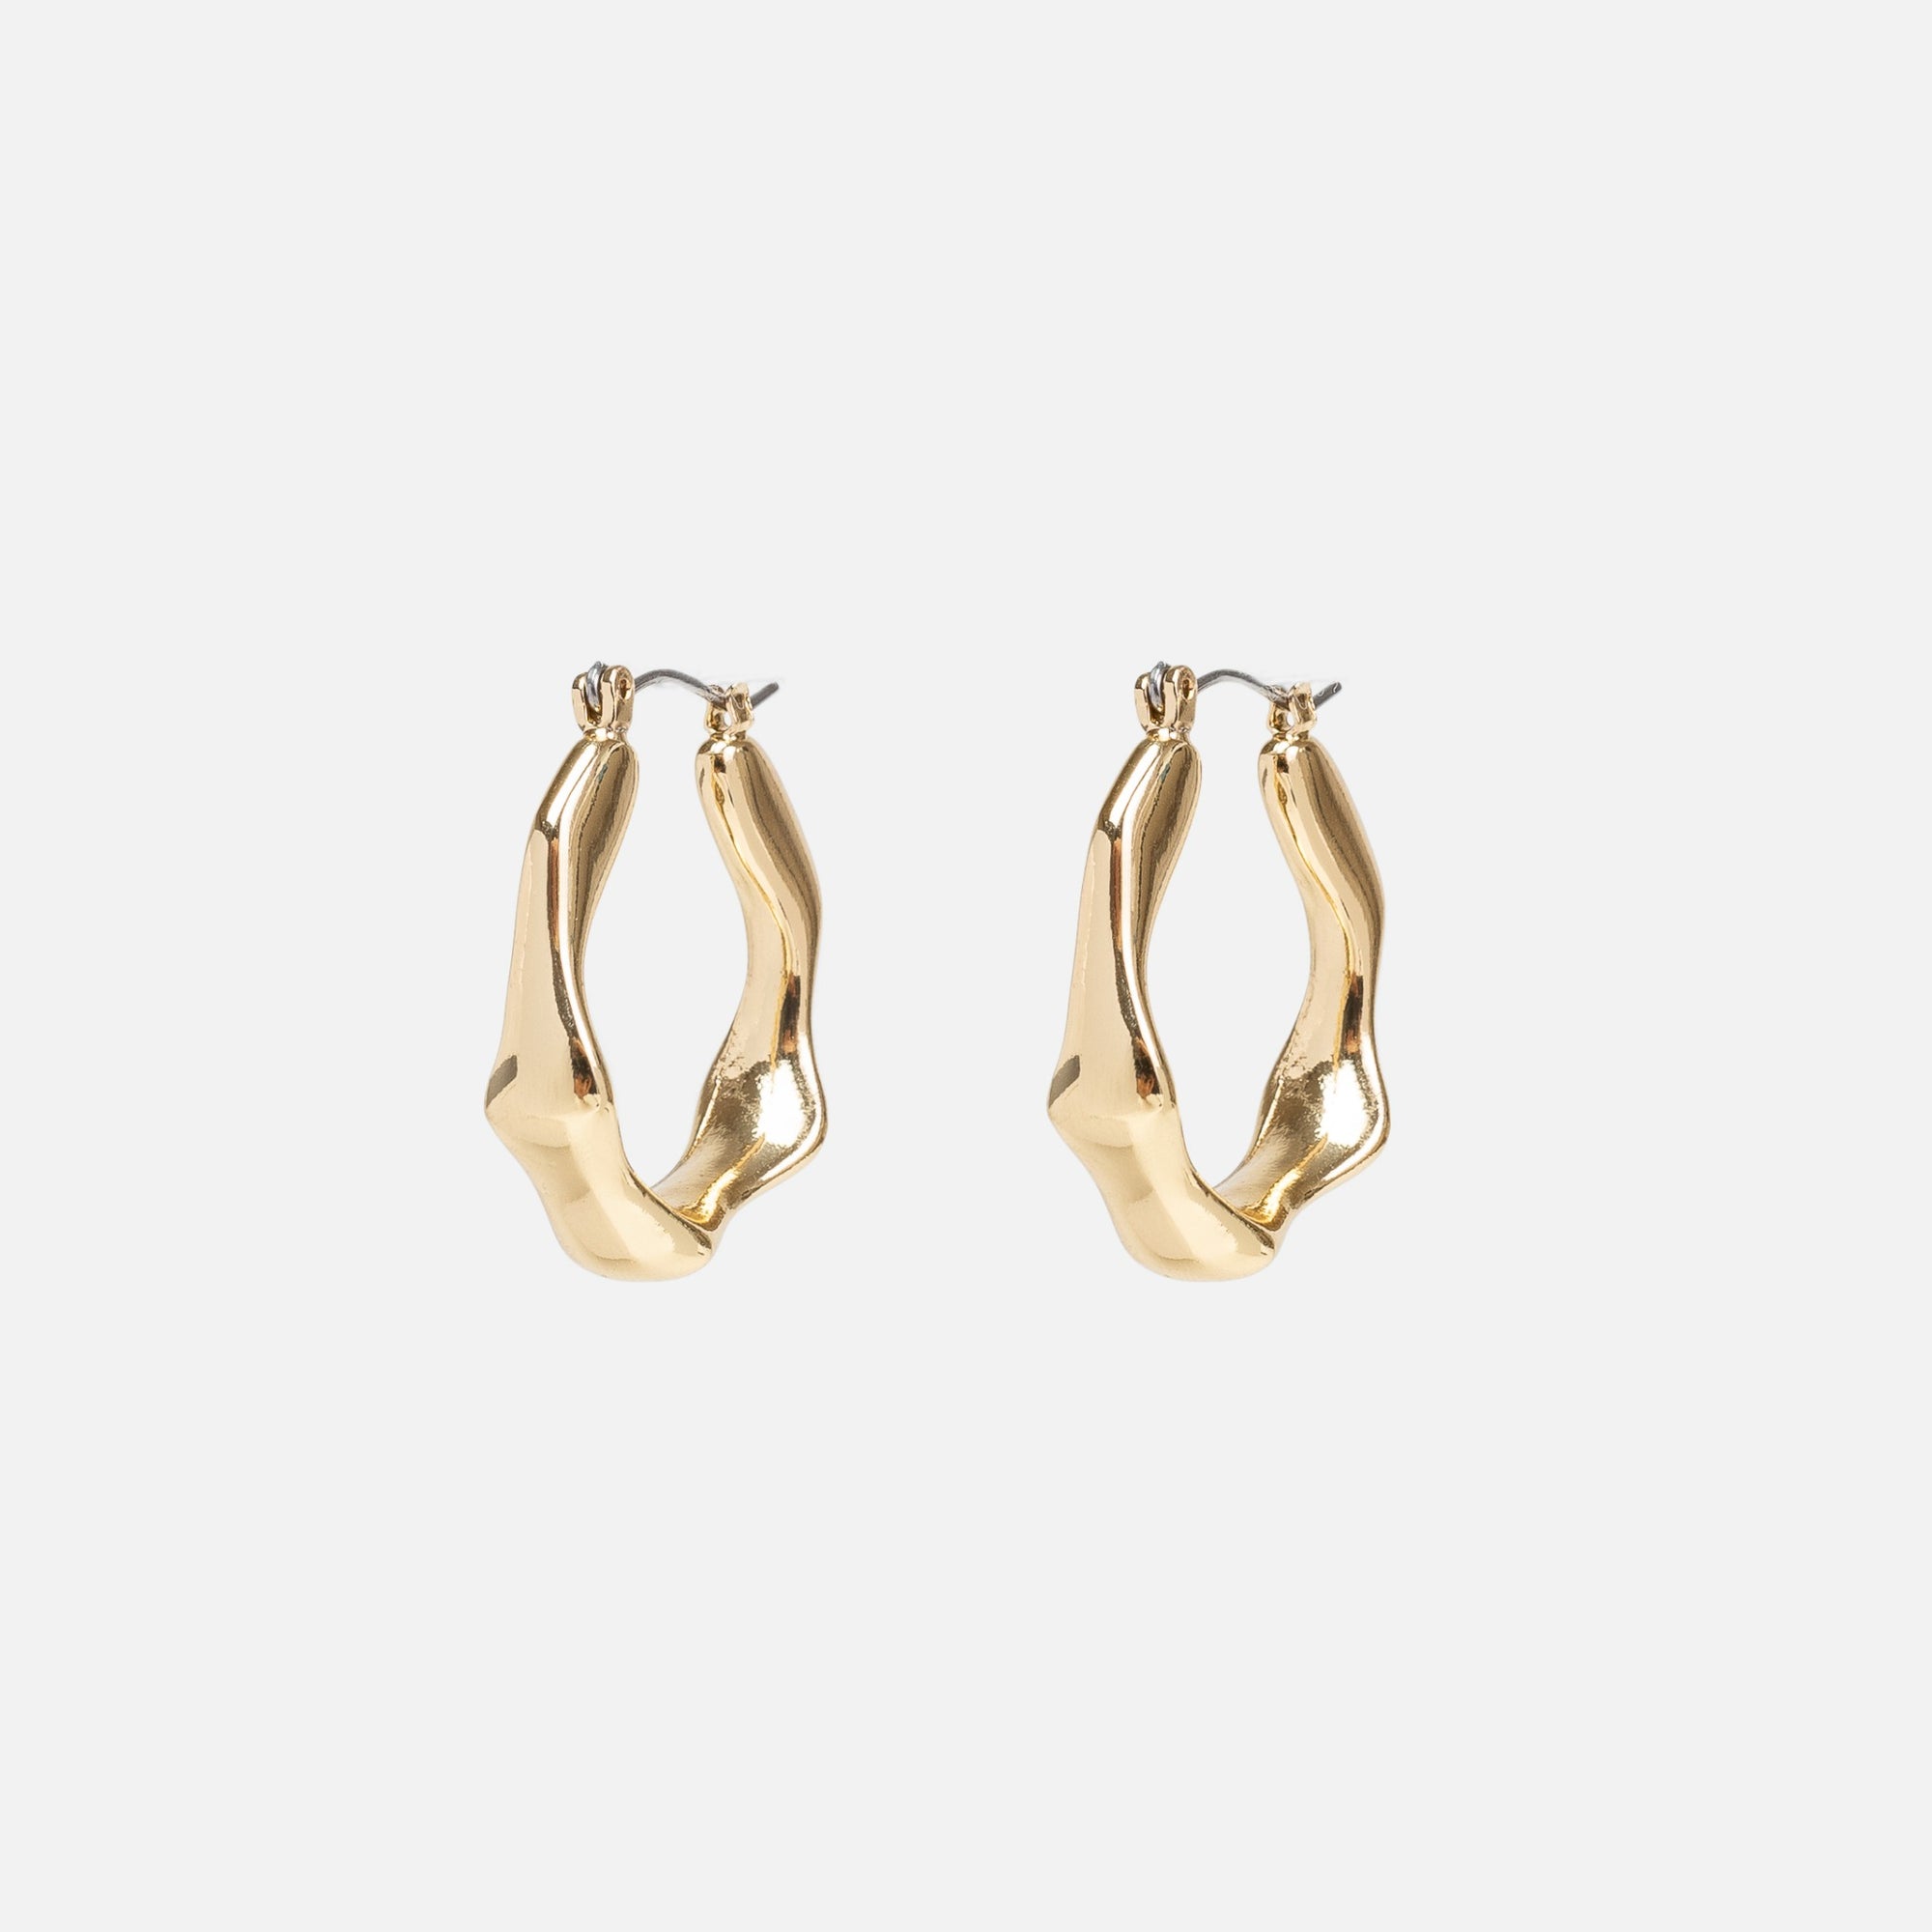 Boucles d’oreilles dorées anneaux martelés